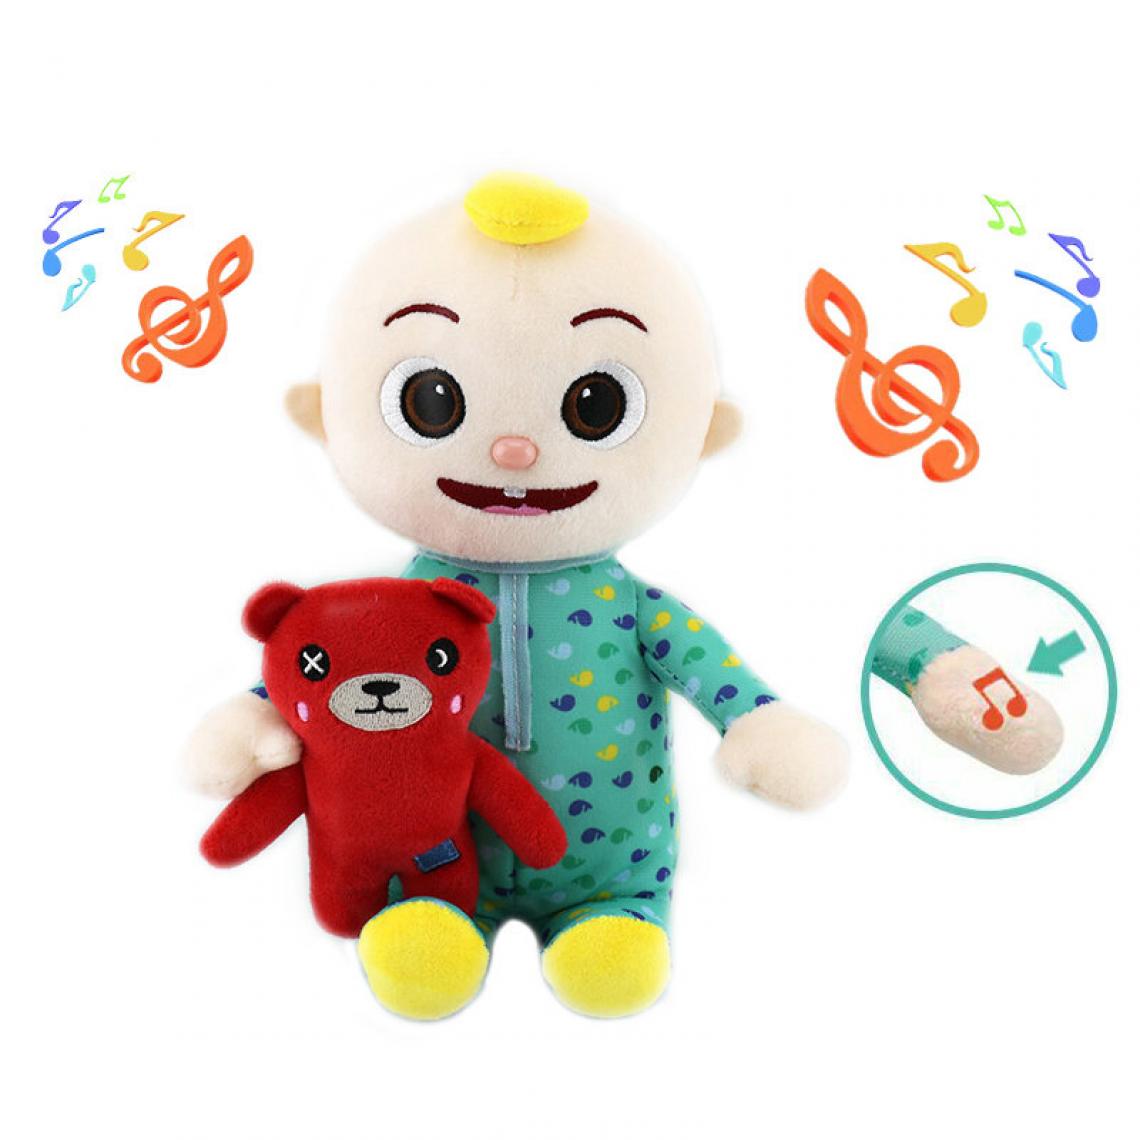 Universal - JJ, musique de garçon, poupées, jouets, cadeaux pour enfants.(Vert) - Doudous